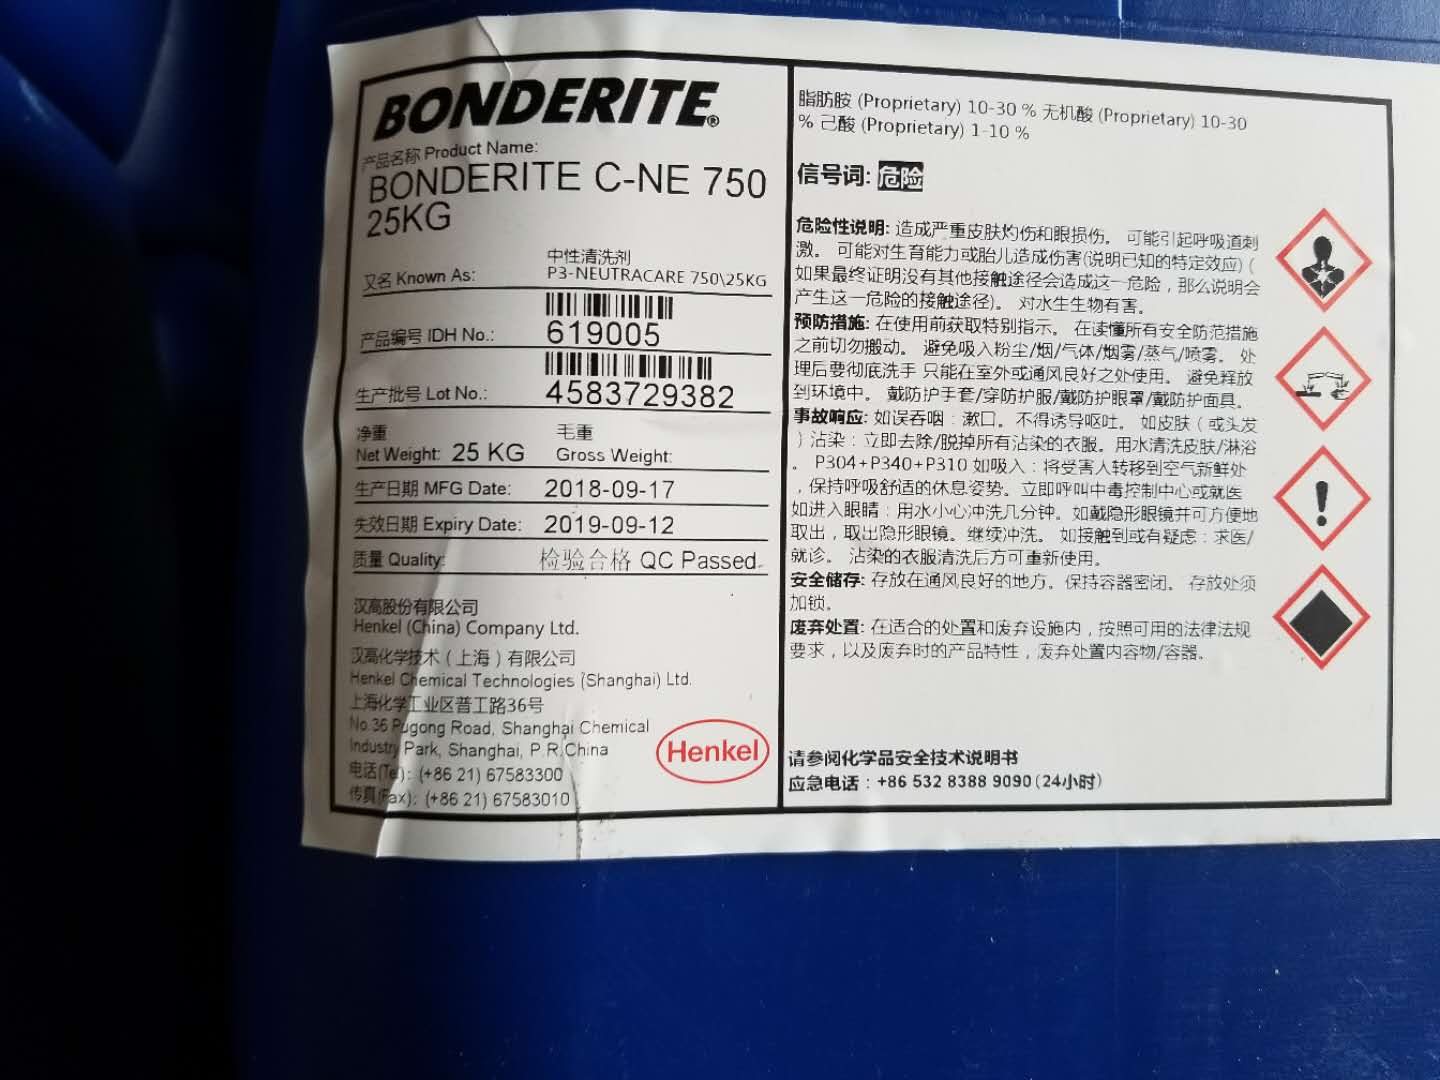 汉高P3 neutracare750油污清洗剂不含磷酸盐